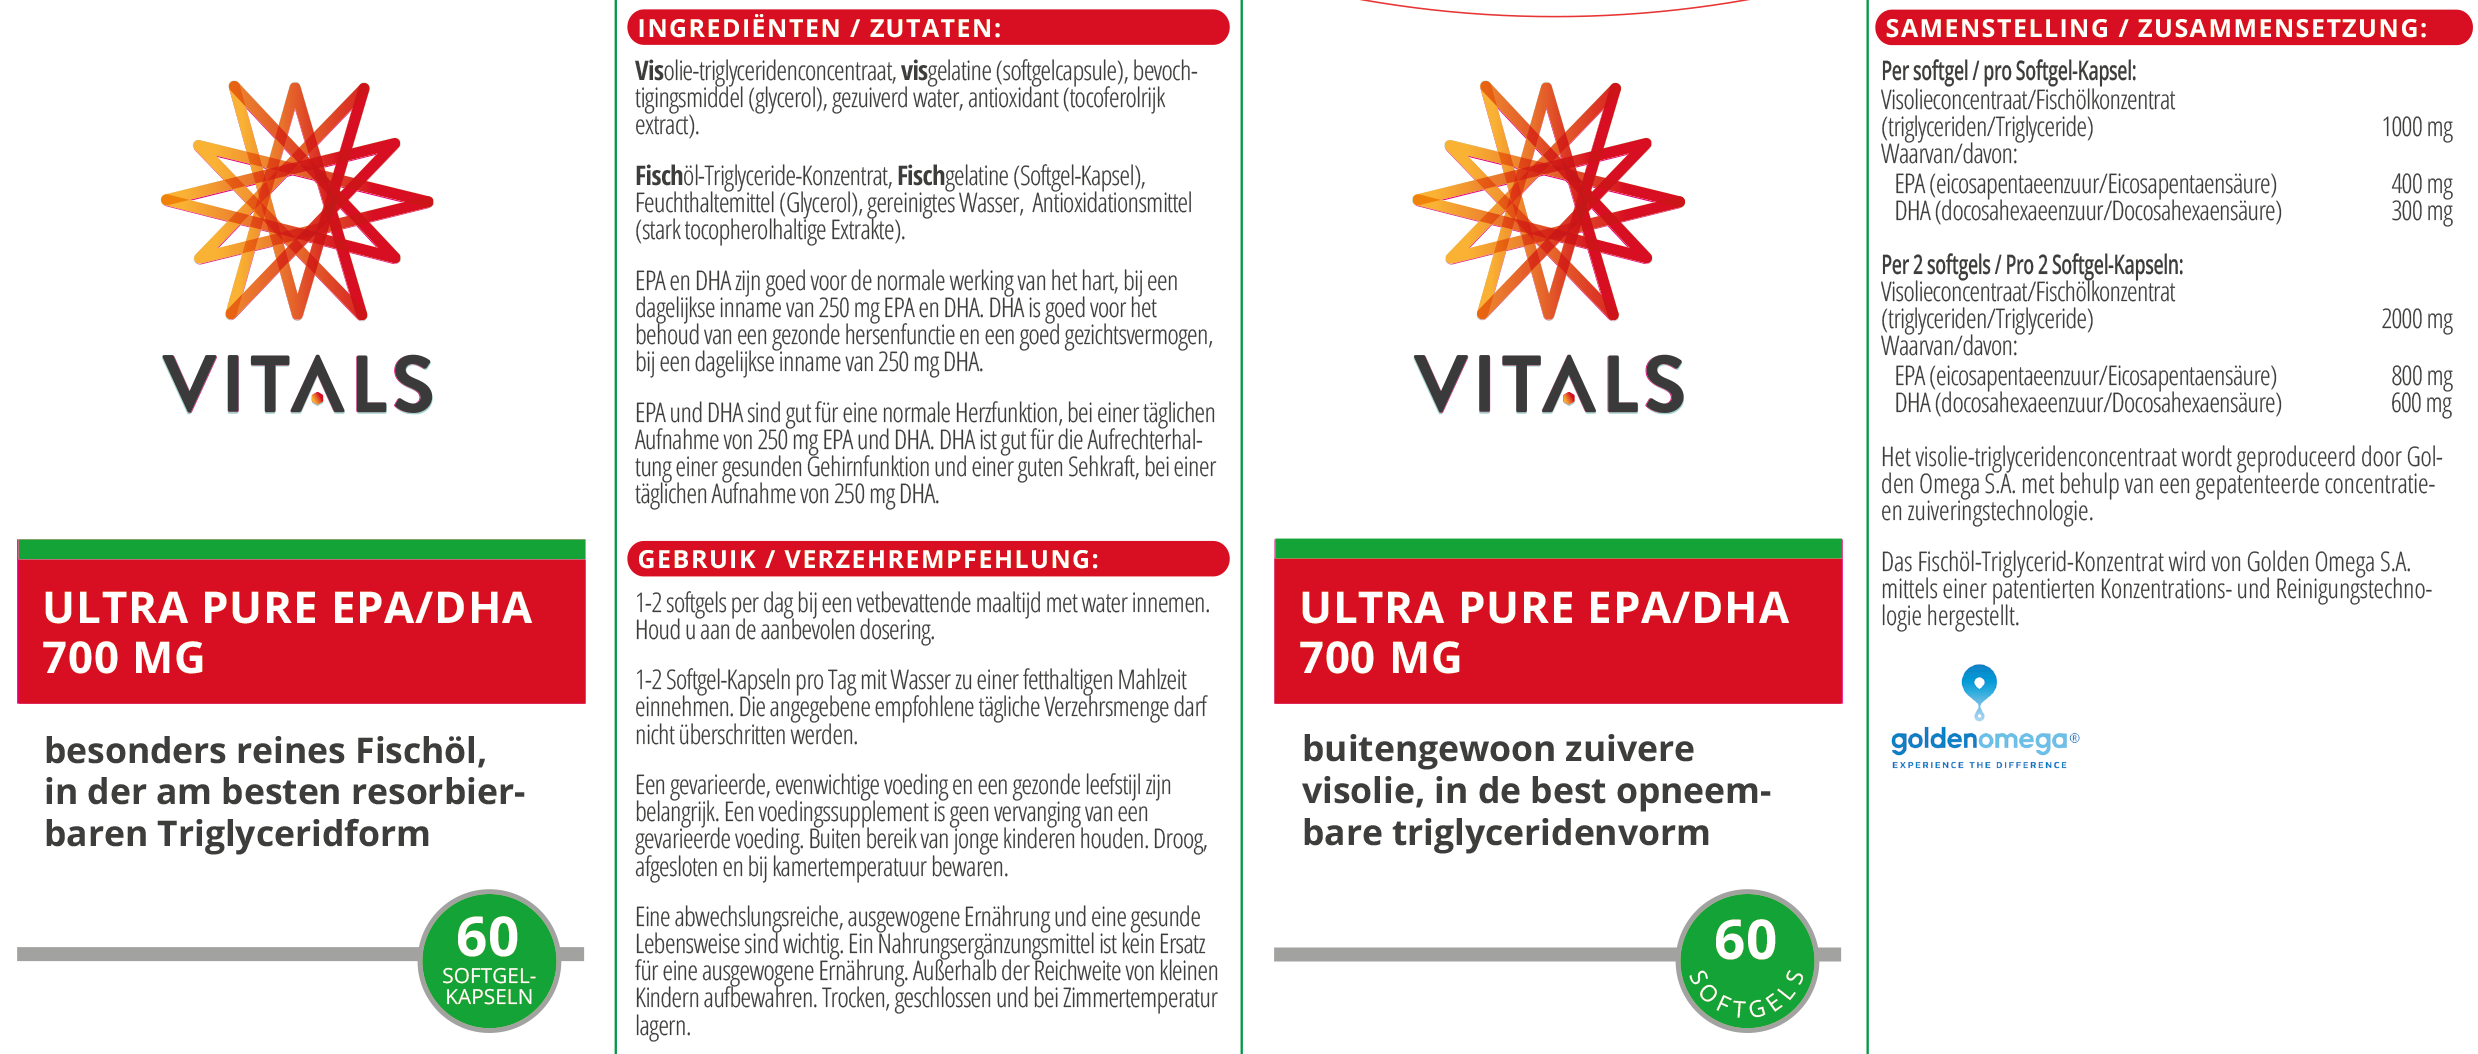 Ultra Pure EPA/DHA 700 mg